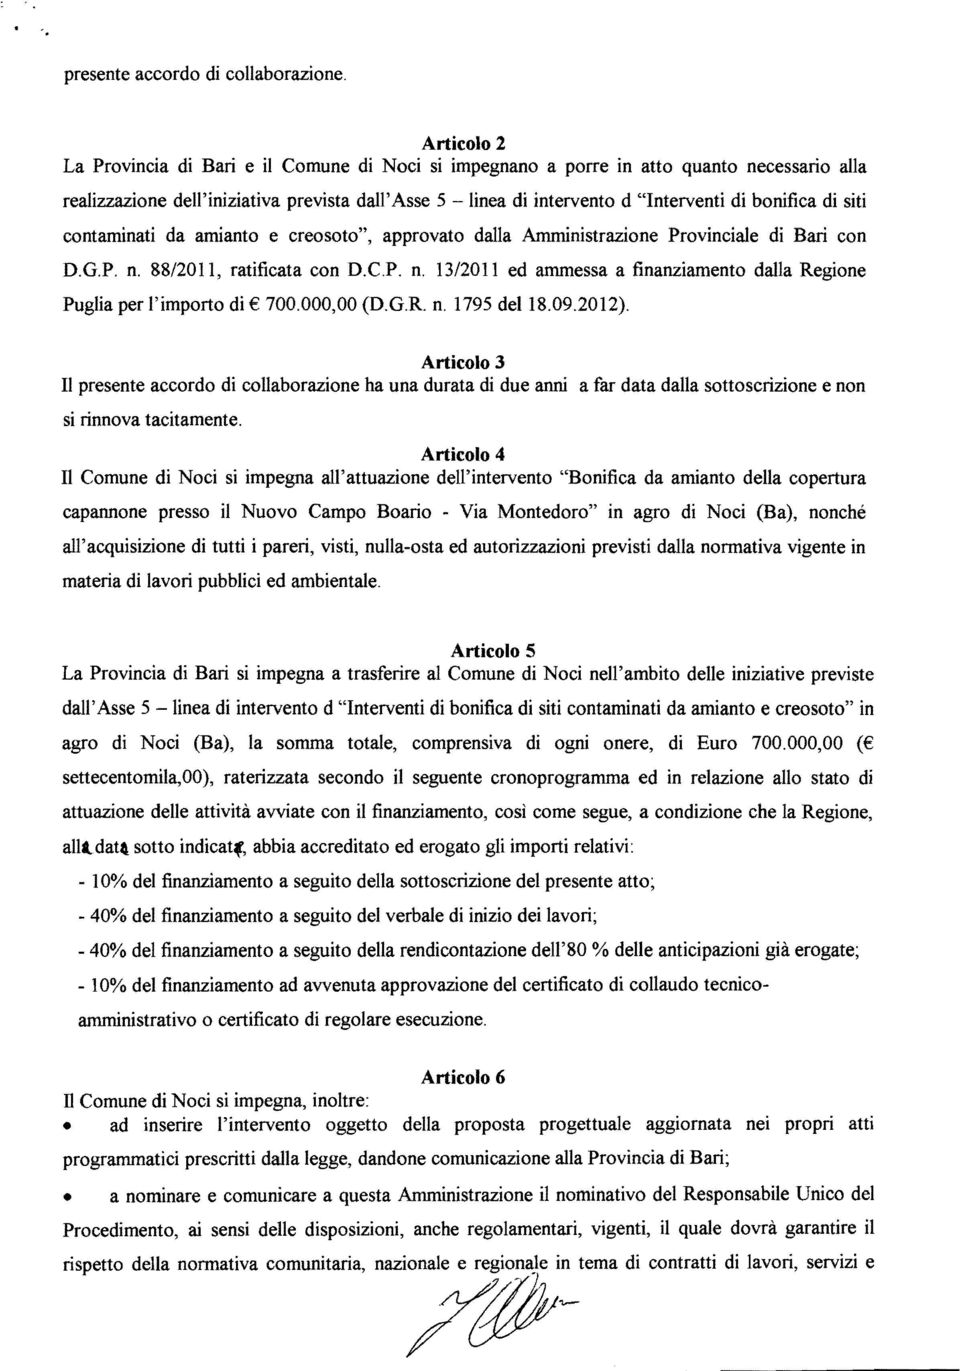 bonifica di siti contaminati da amianto e creosoto", approvato dalla Amministrazione Provinciale di Bari con D.G.P. n. 88/2011, ratificata con D.C.P. n. 13/2011 ed ammessa a finanziamento dalla Regione Puglia per l'importo di 700.